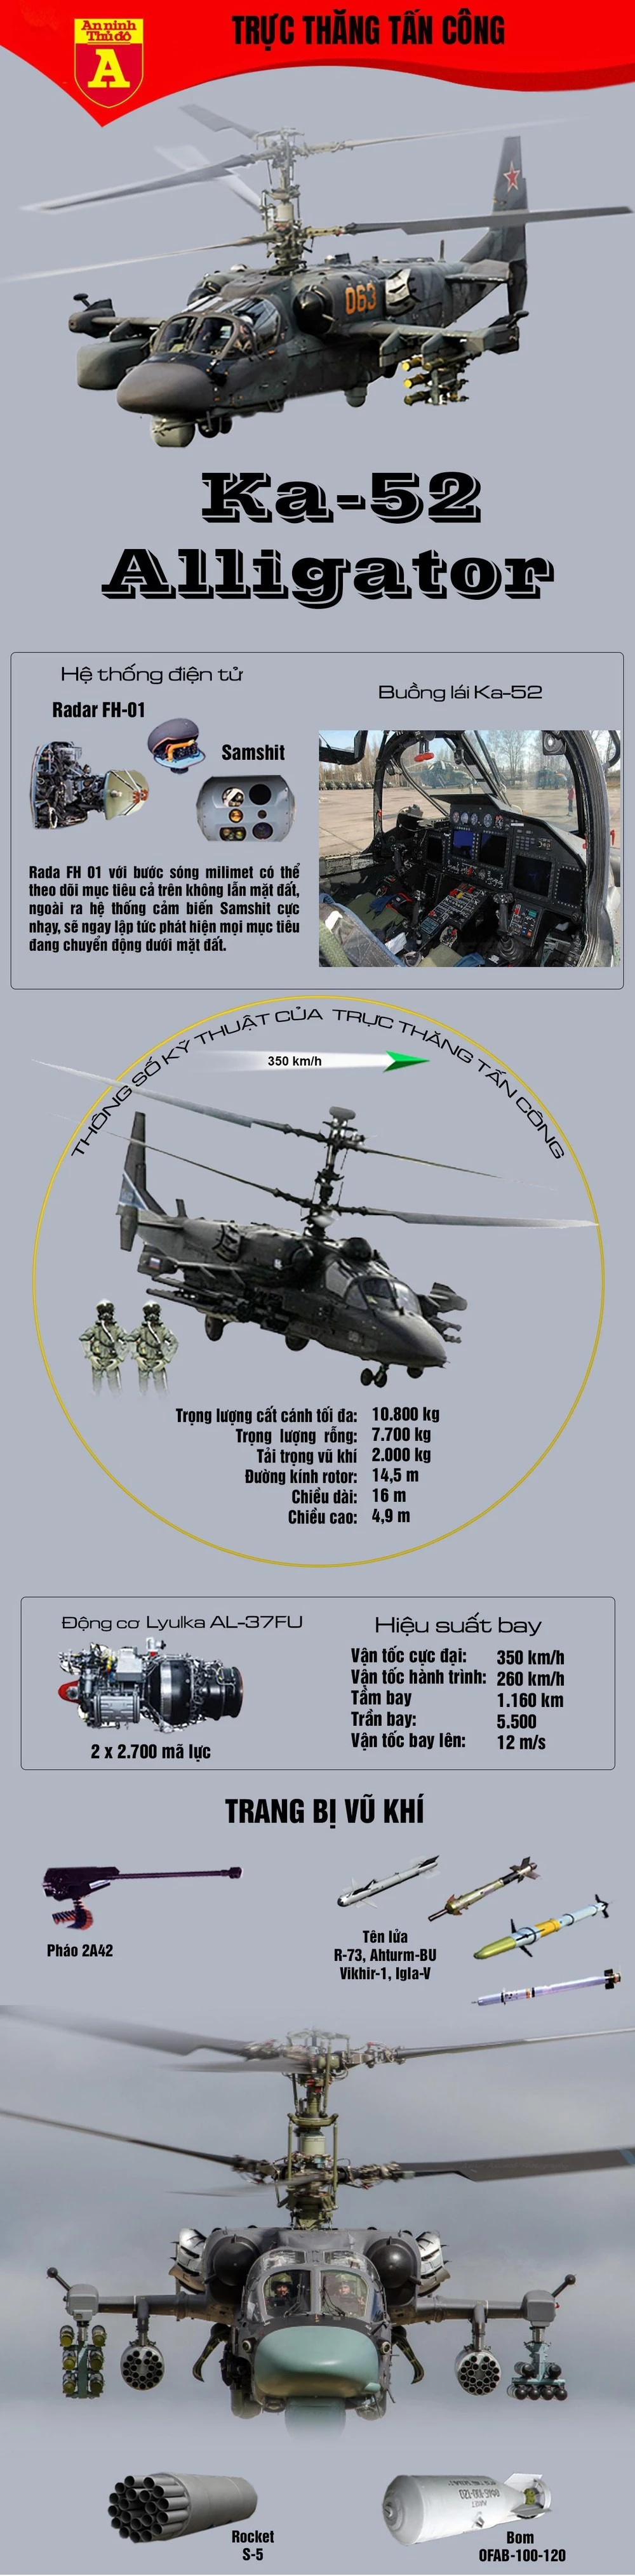 Tiết lộ nhiệm vụ hiện tại của siêu trực thăng tấn công Ka-52 Nga tại Syria ảnh 3